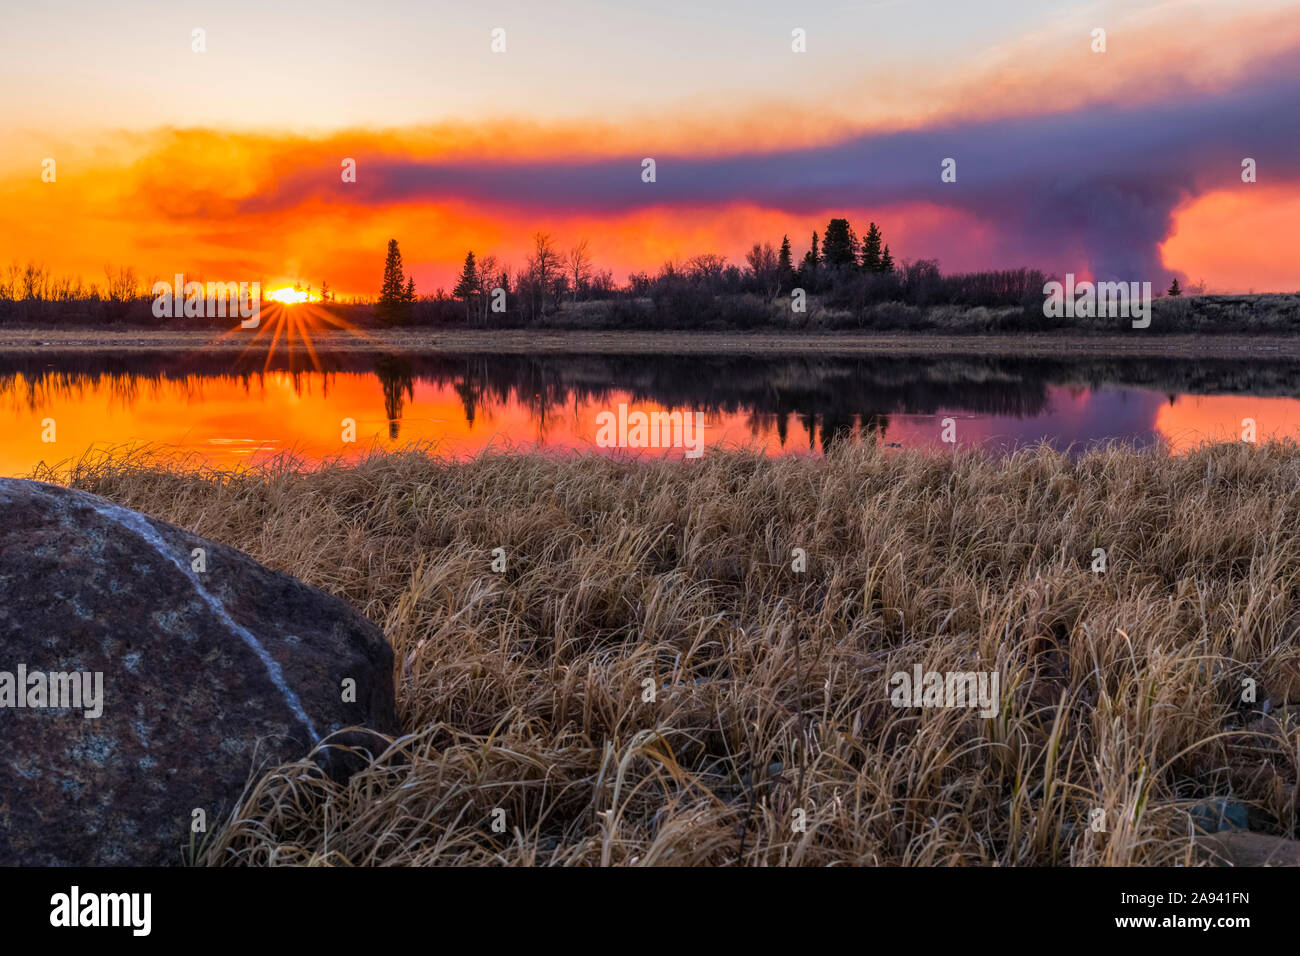 Un pennacchio di fumo che sorge dall'incendio dei 2019 laghi dell'Oregon si riflette in un lago al tramonto, a sud di Delta Junction; Alaska, Stati Uniti d'America Foto Stock